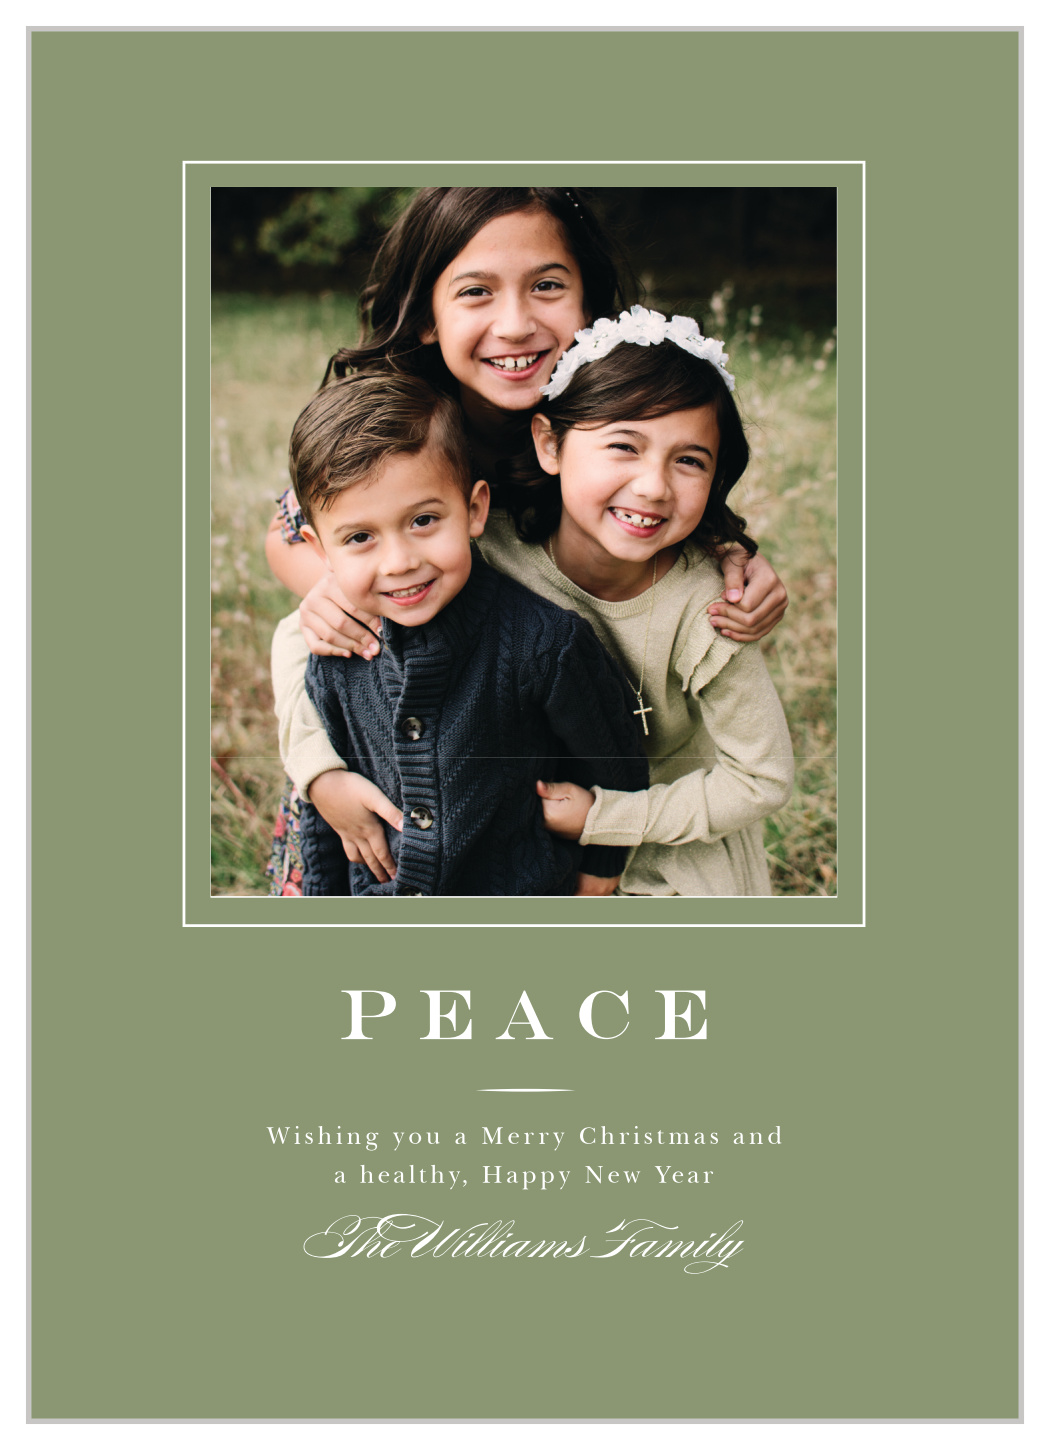 Peaceful Frame Christmas Cards